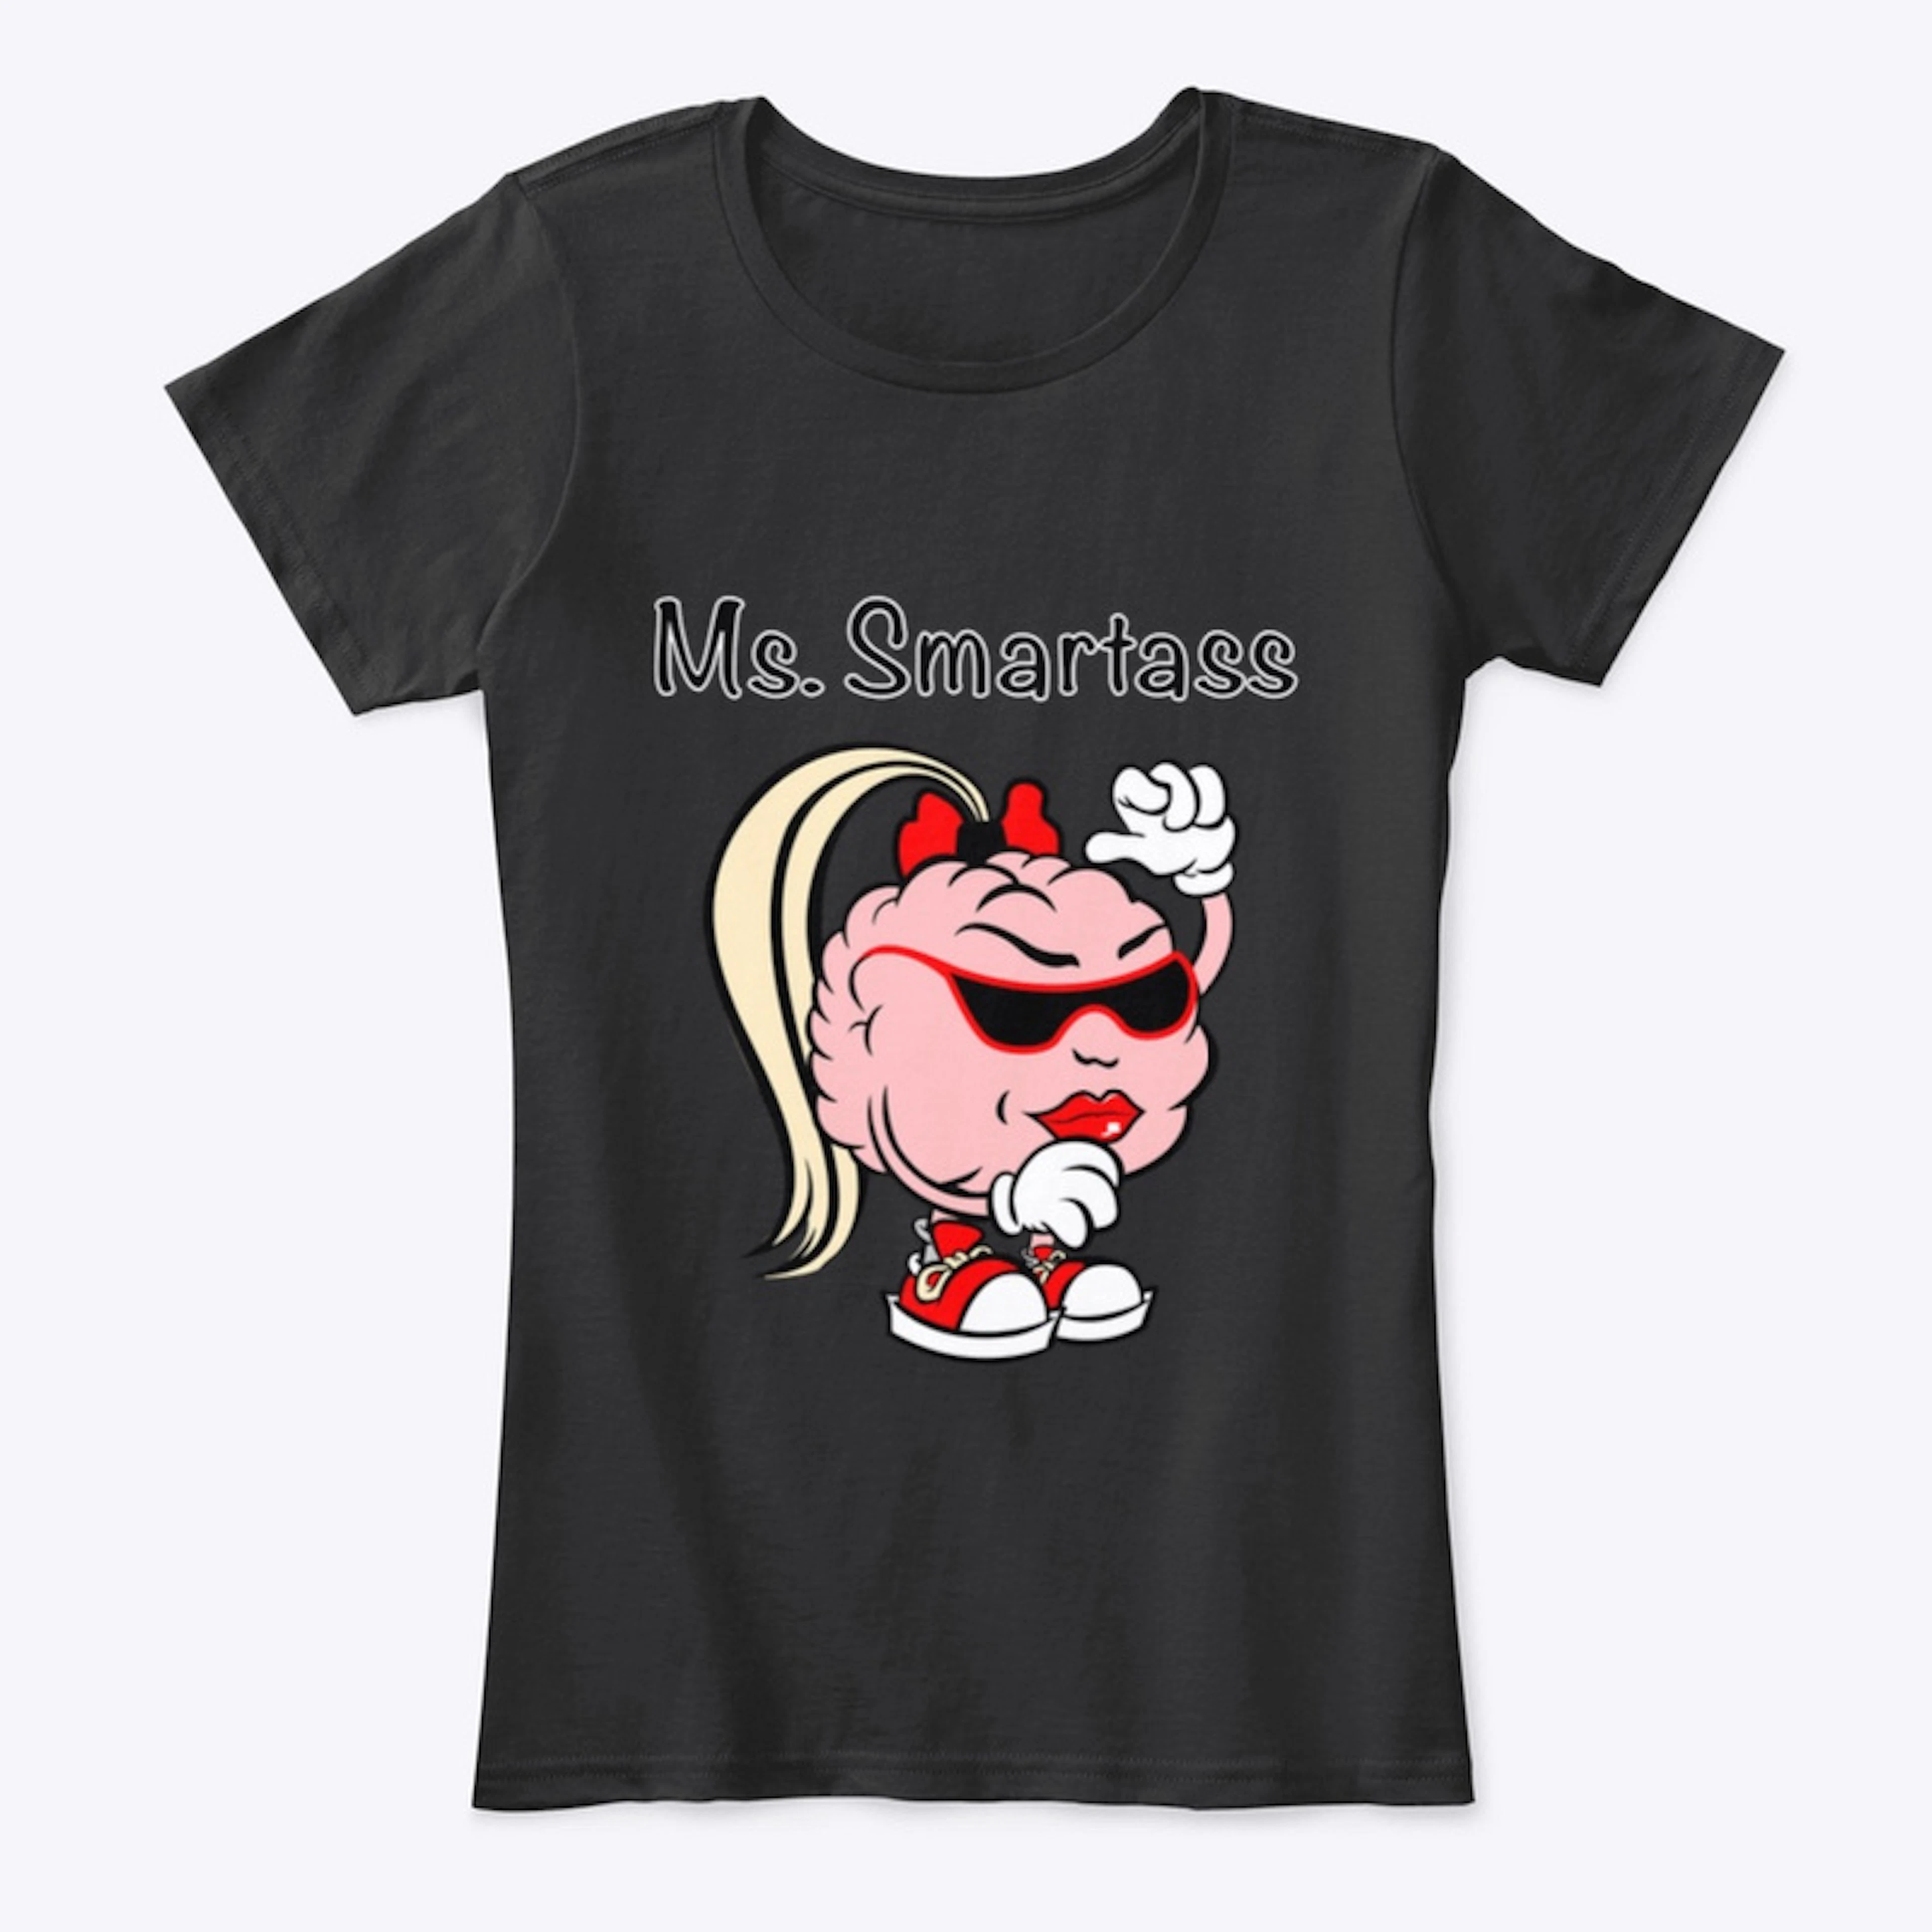 Ms. Smartass women’s T-Shirt